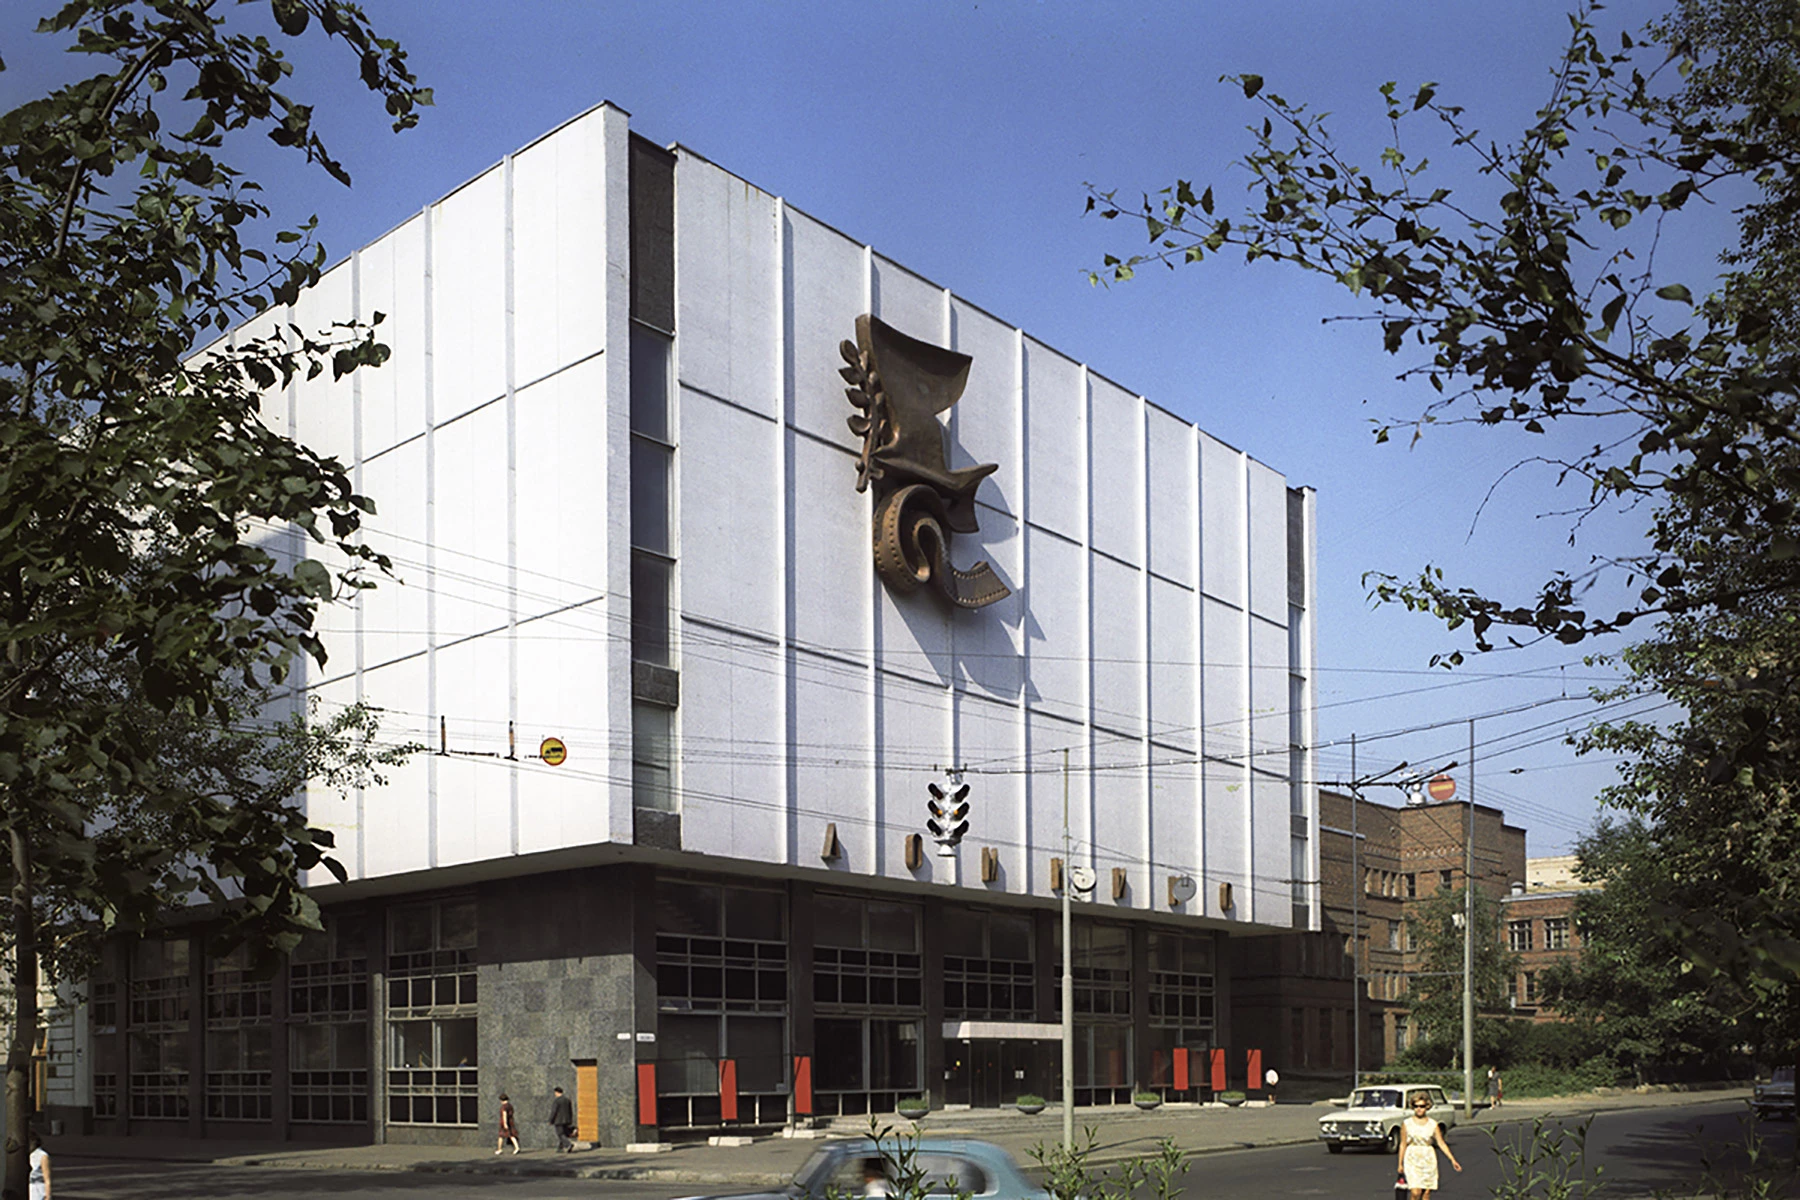 <p>Центральный дом кинематографистов. Построен в 1968 году. Архитектор Е.Н. Стамо</p>

<p></p>